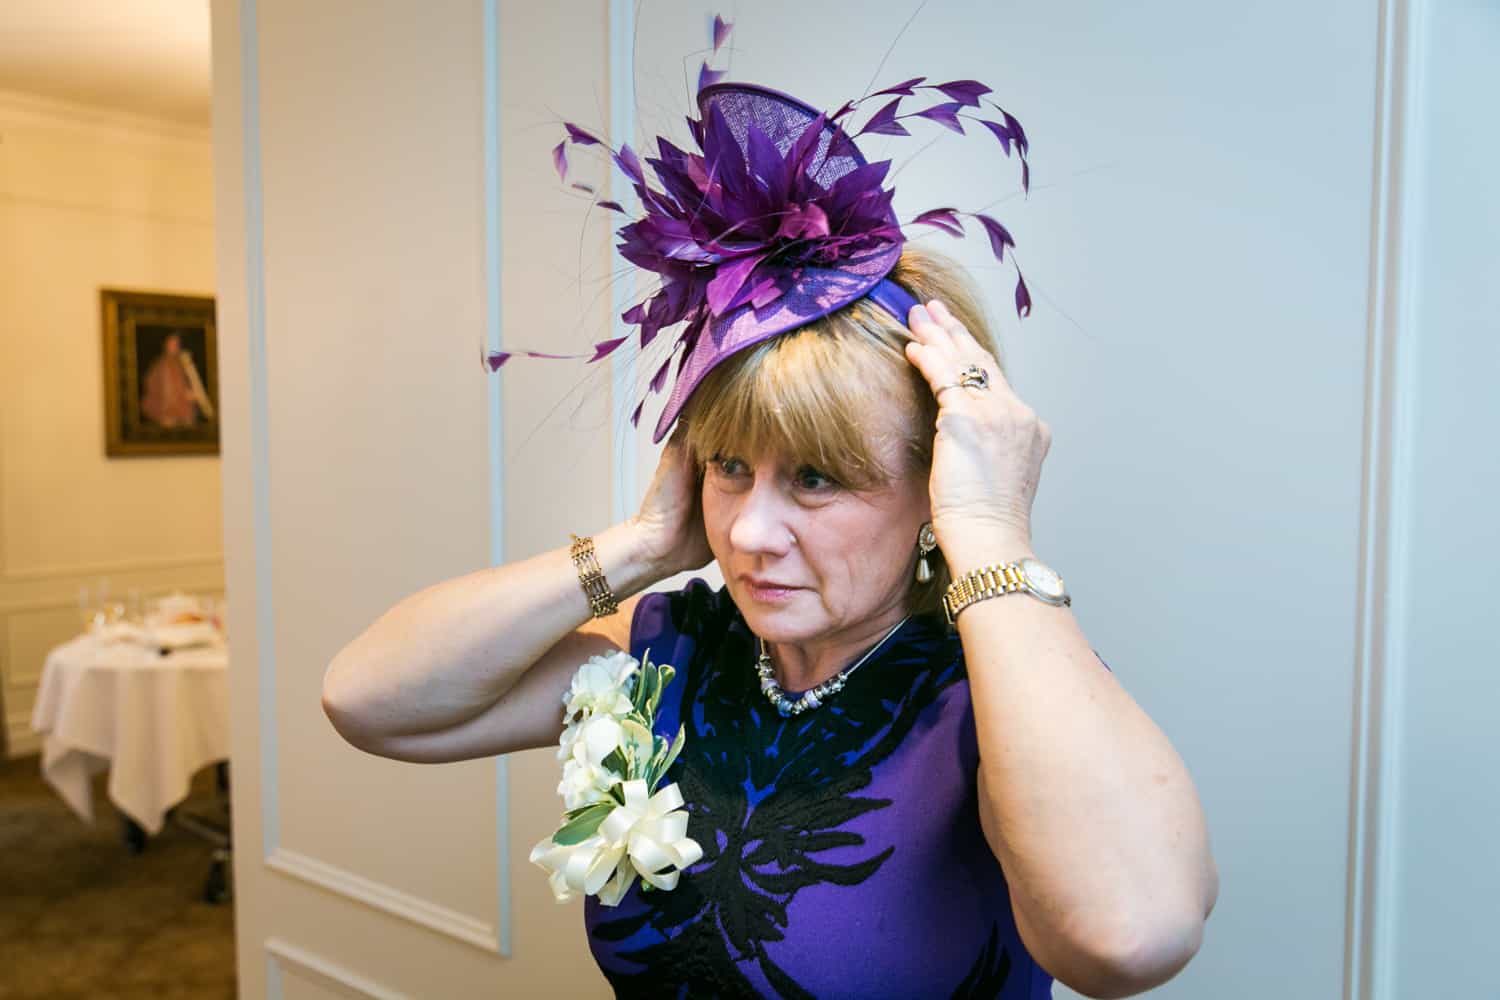 Woman adjusting purple hat before wedding